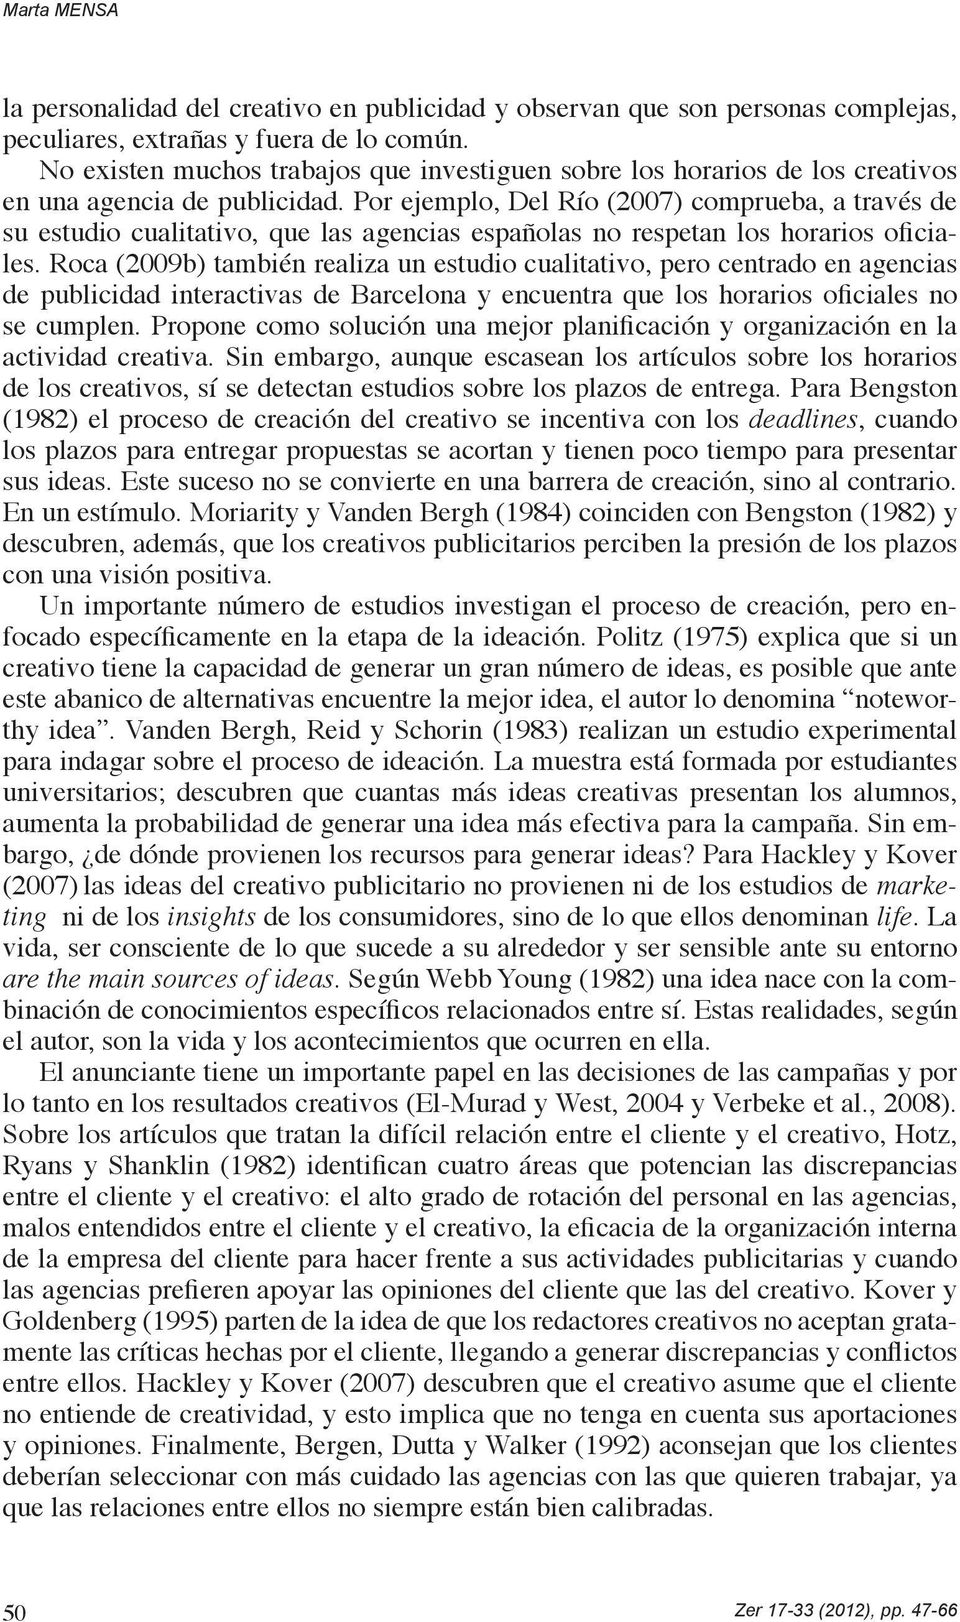 Por ejemplo, Del Río (2007) comprueba, a través de su estudio cualitativo, que las agencias españolas no respetan los horarios oficiales.